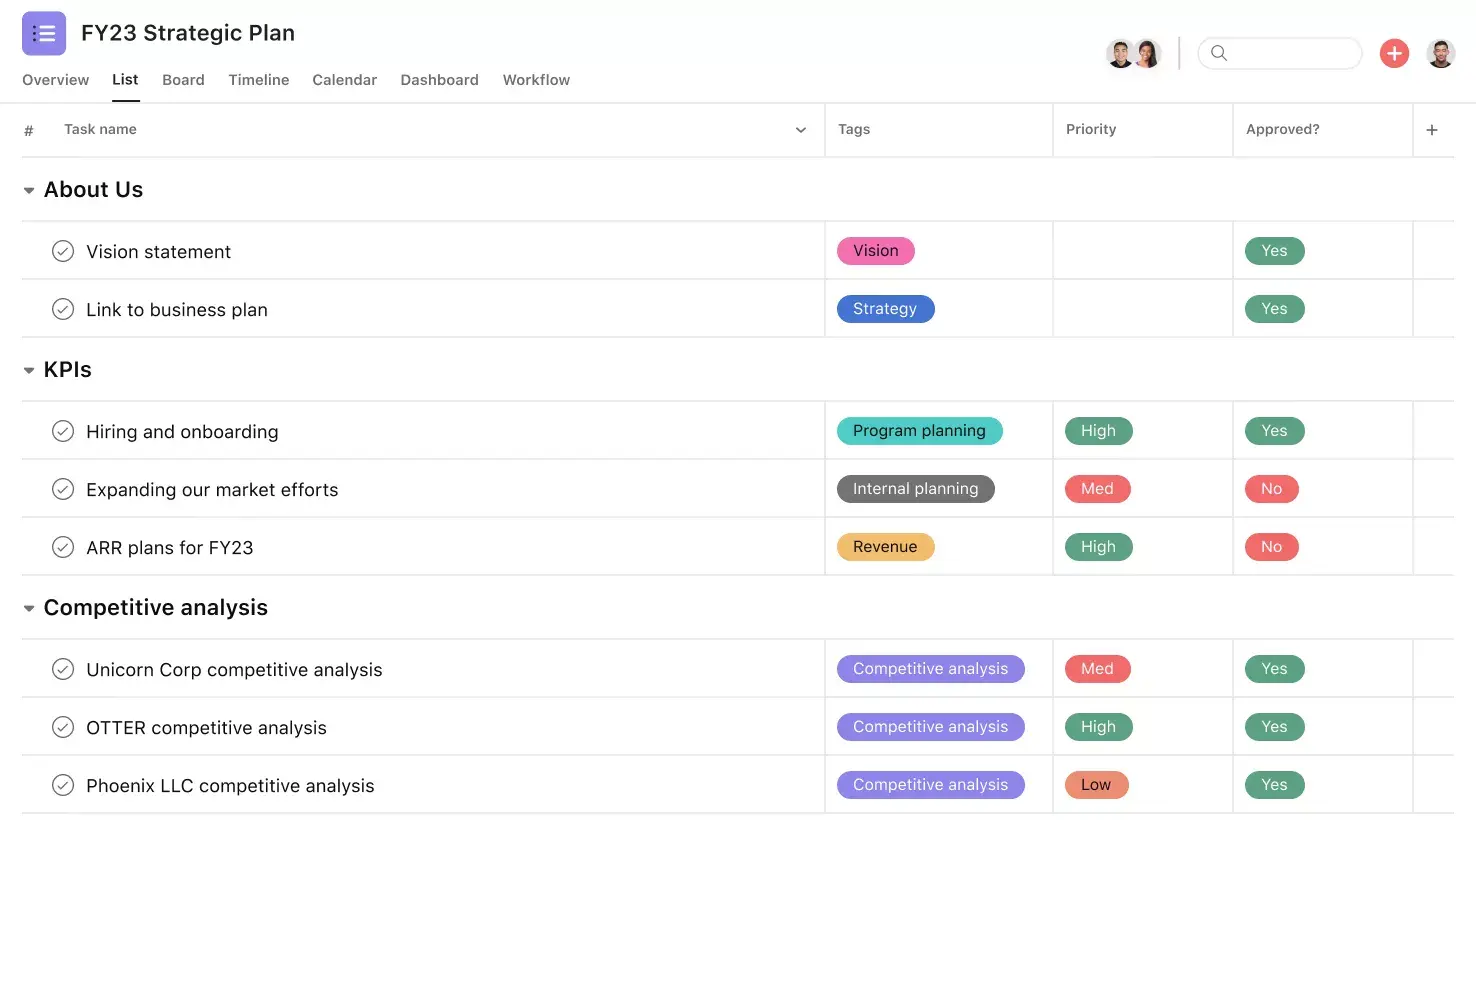 [UI Produk] Proyek perencanaan strategis di Asana, tampilan proyek berbentuk spreadsheet (Daftar)